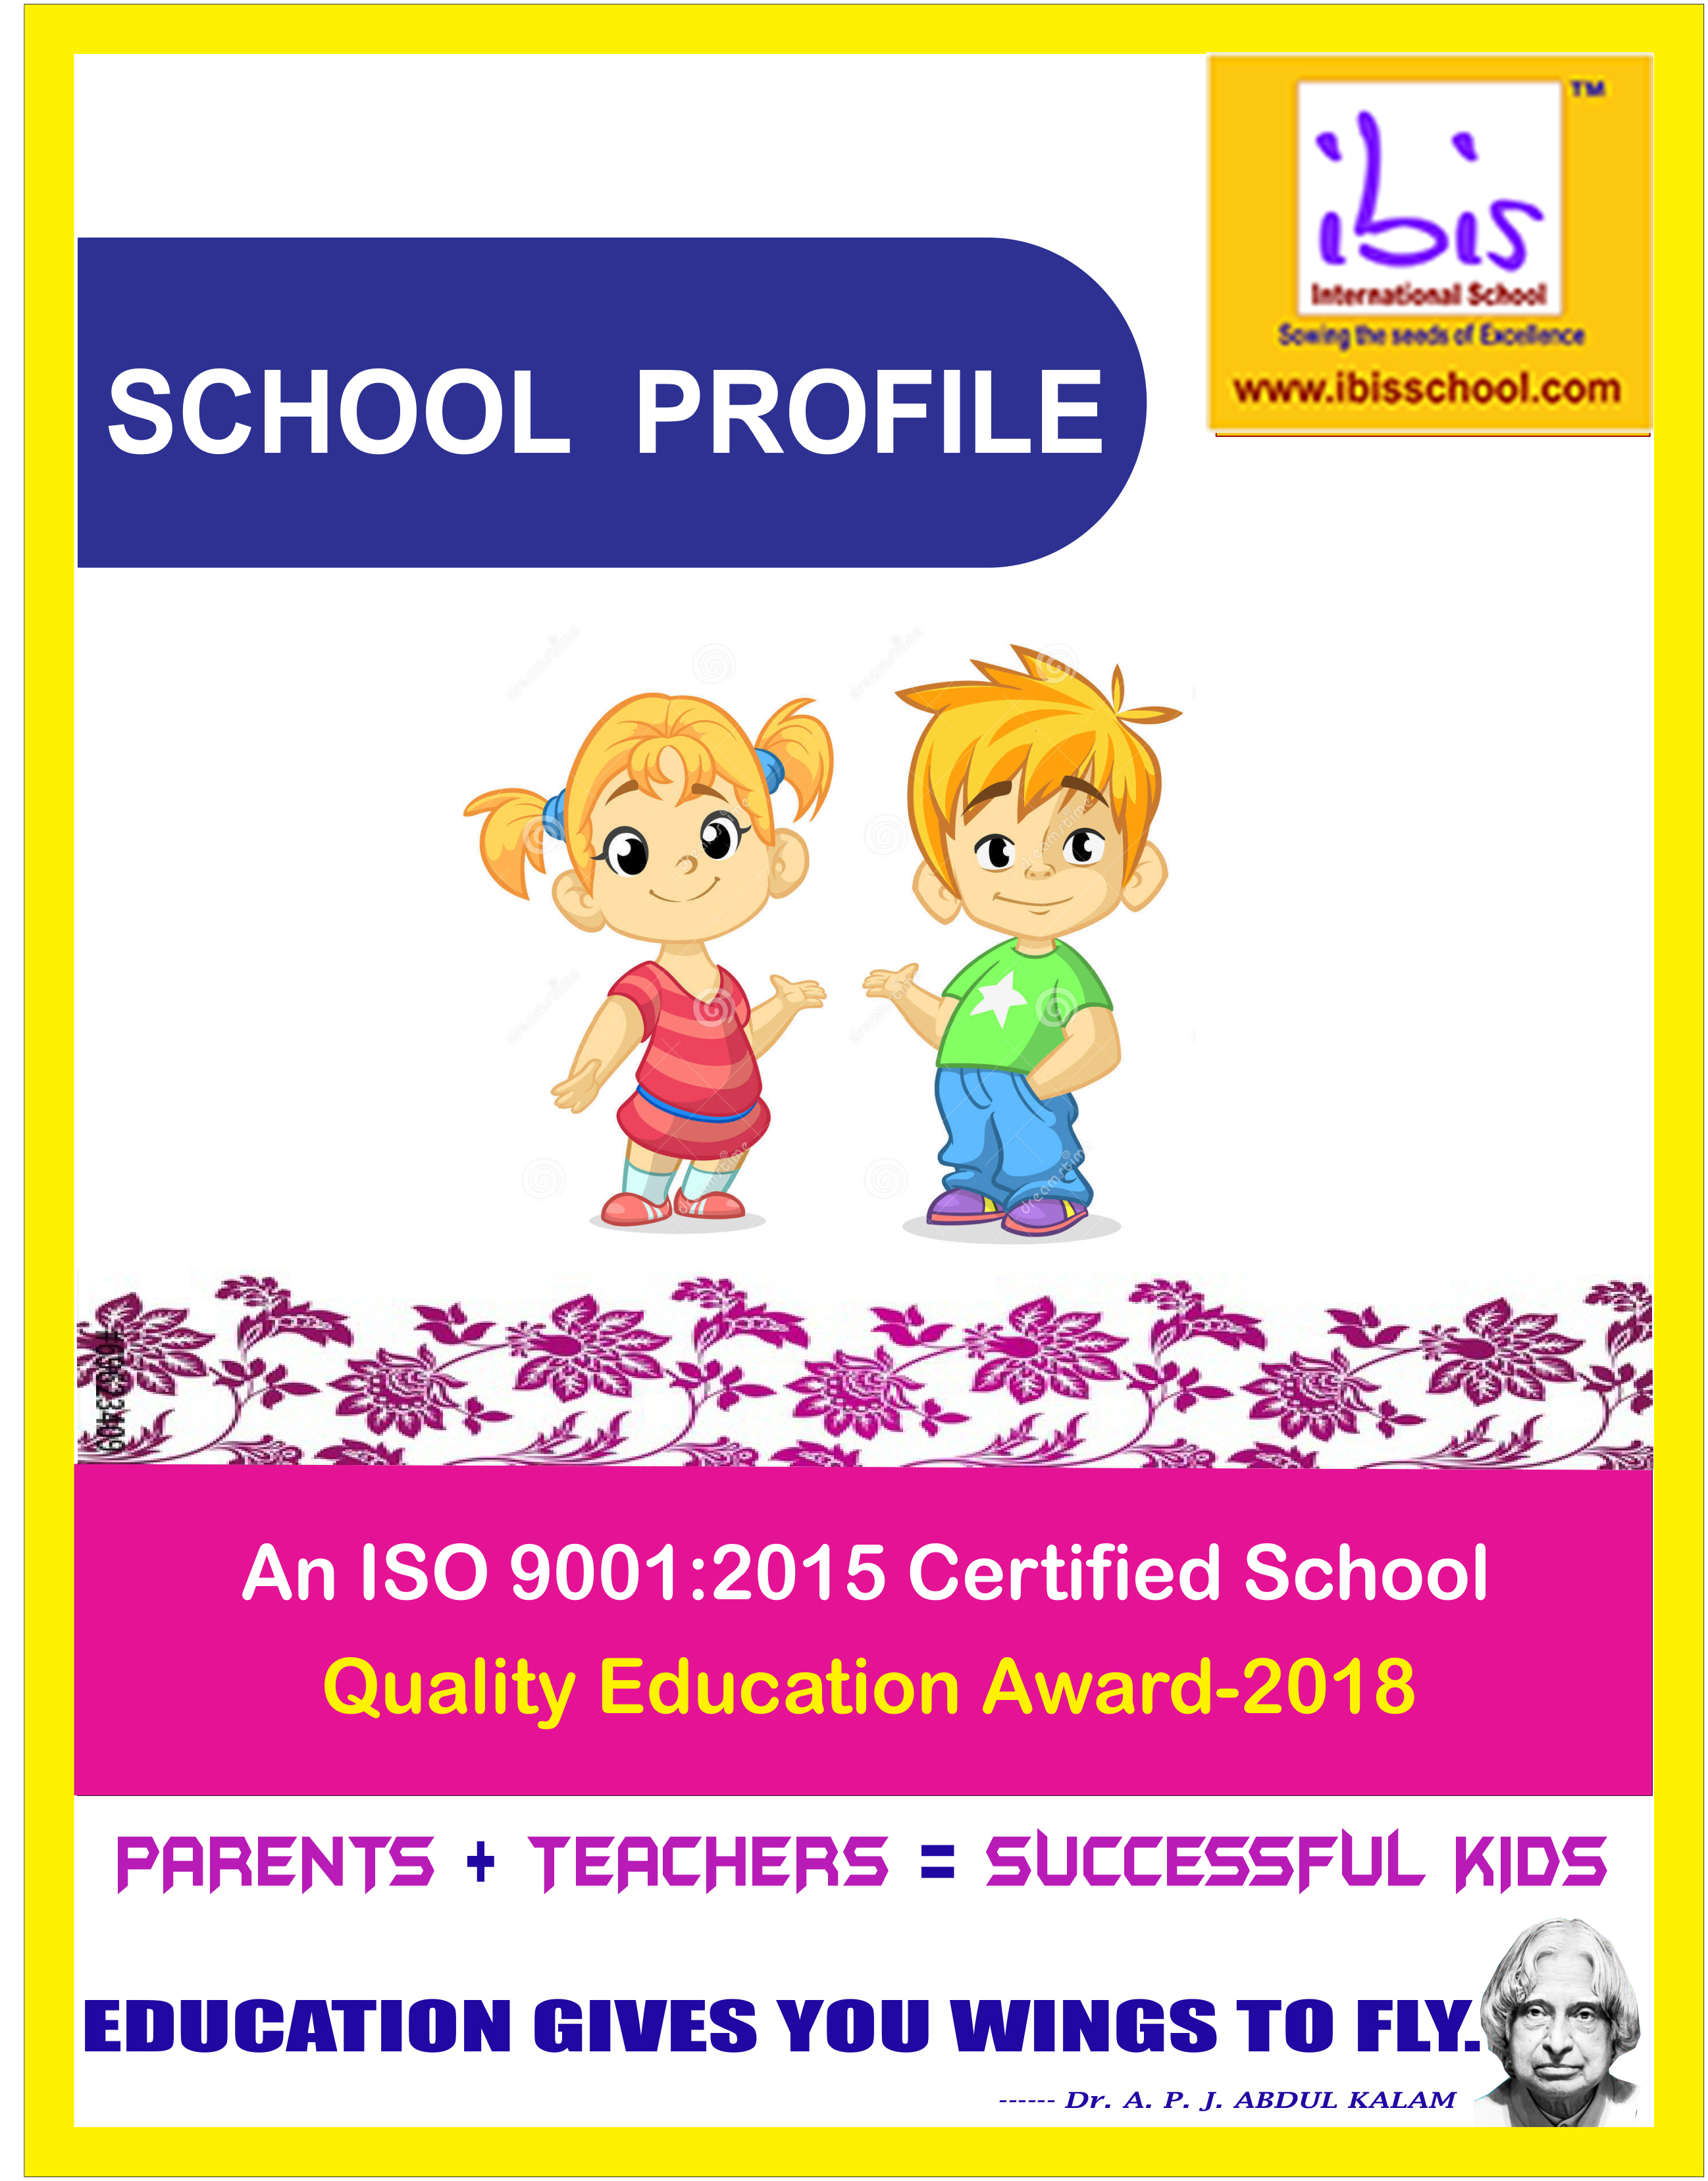  Ibis School Profile images